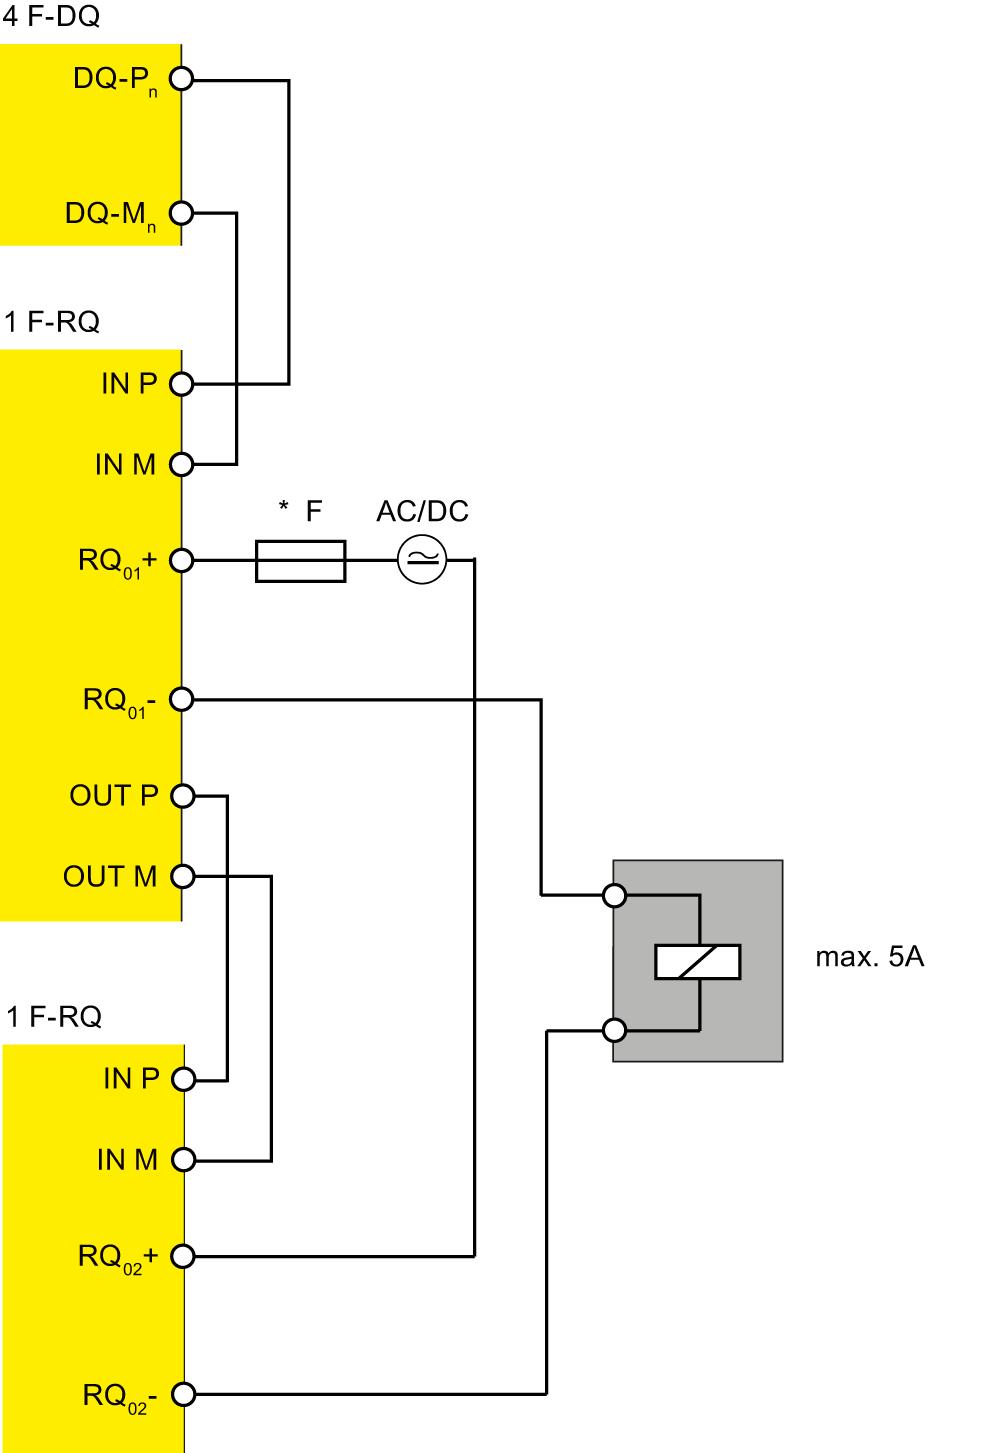 Anwendungsfälle des F-Peripheriemoduls 5.5 Anwendungsfall 4: 1 Last zweipolig mit 2 F-RQ-Modulen abschalten 5.